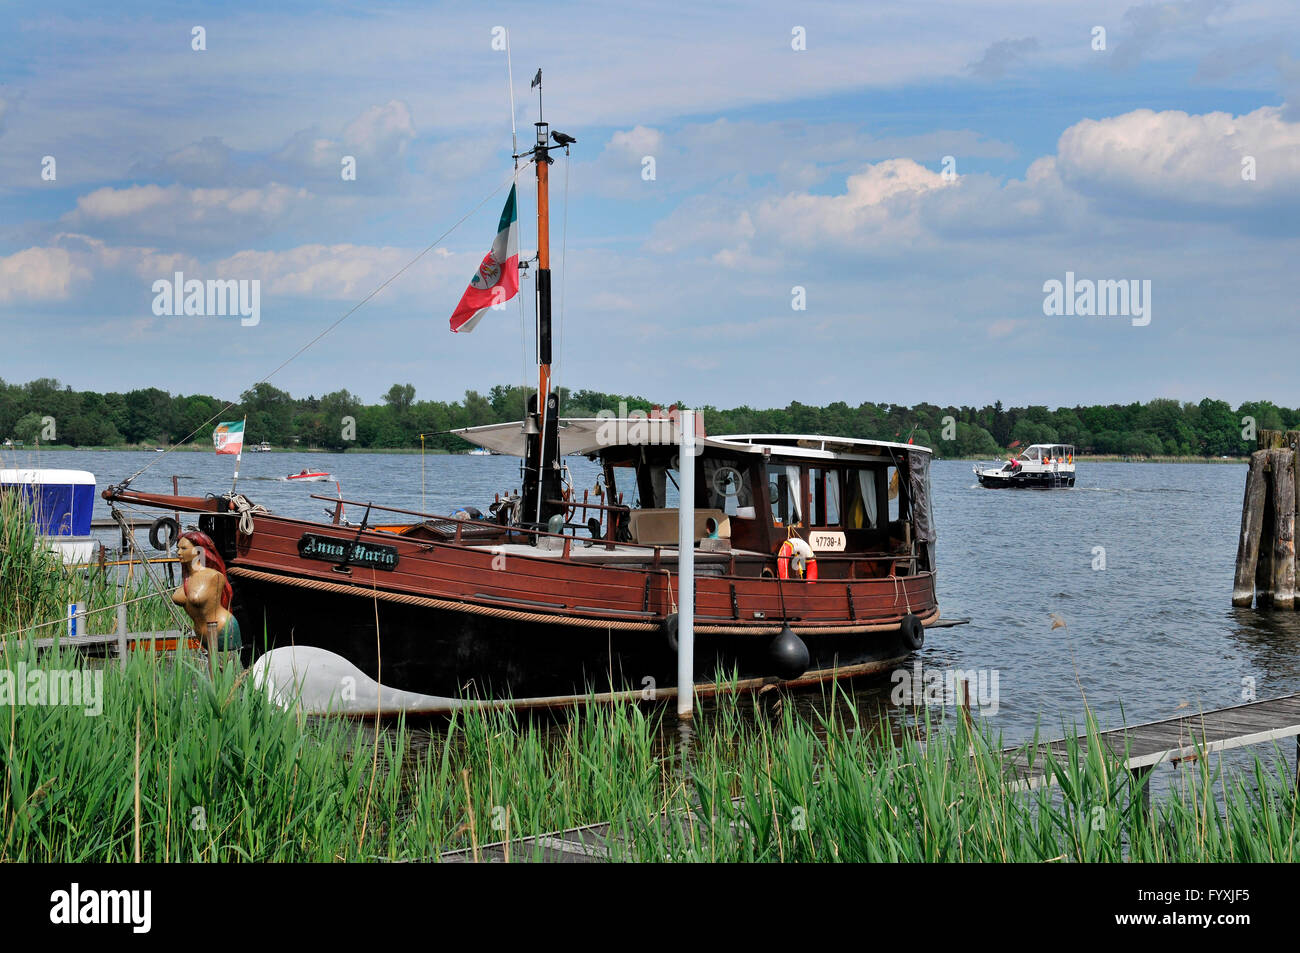 Wooden boat, Werder an der Havel, Brandenburg, Germany Stock Photo